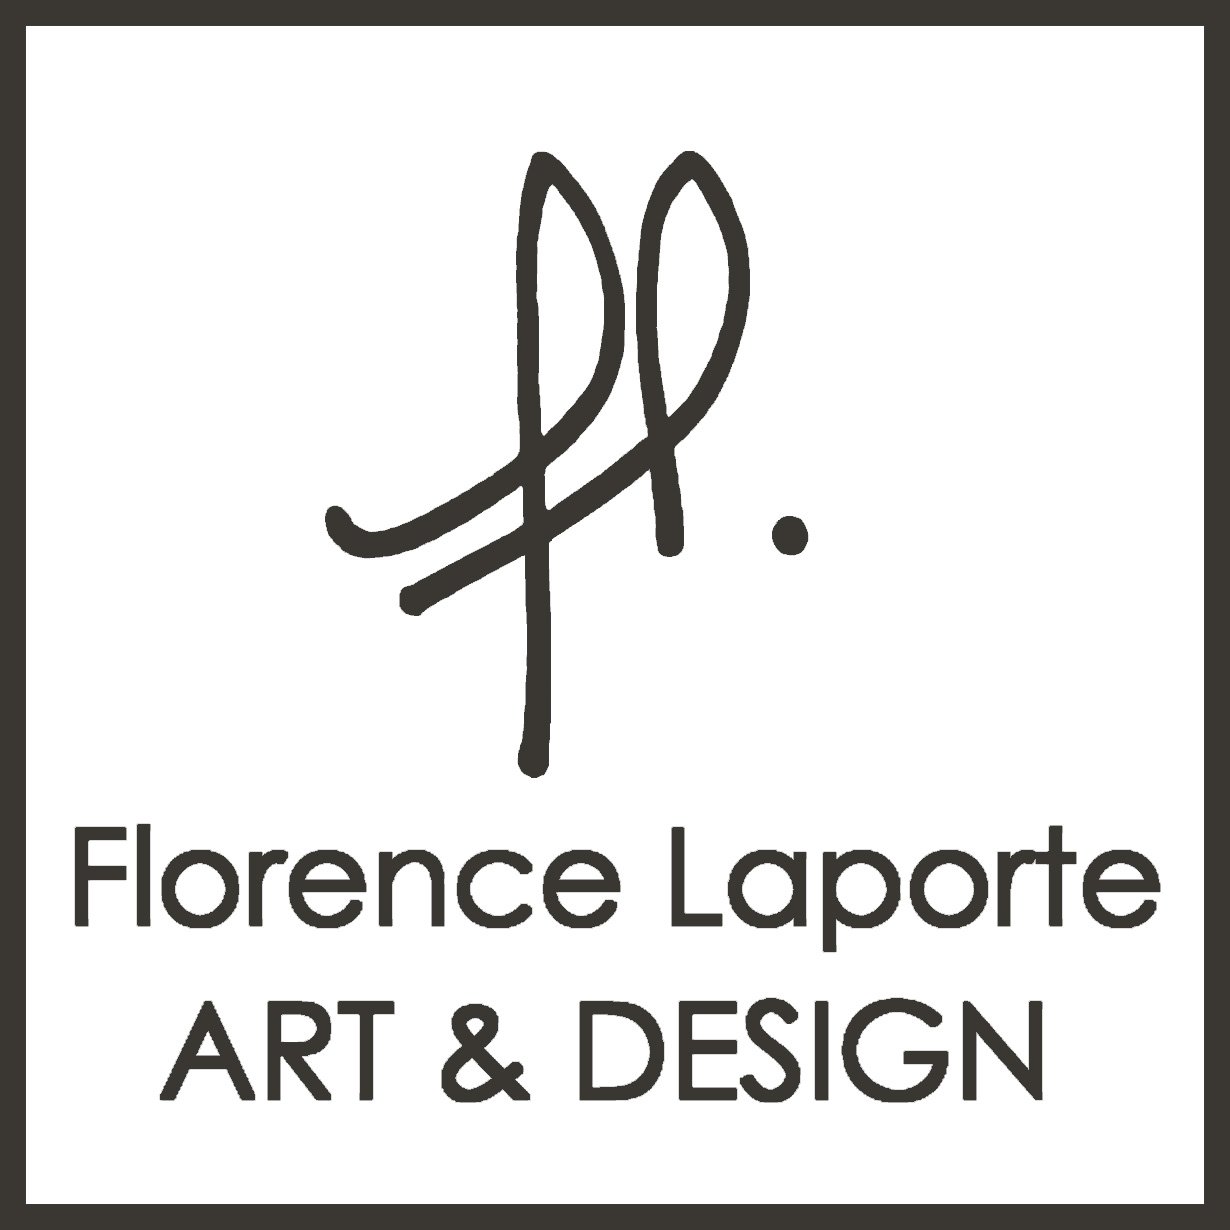 Florence laporte art, Papiers digitaux, cours en ligne